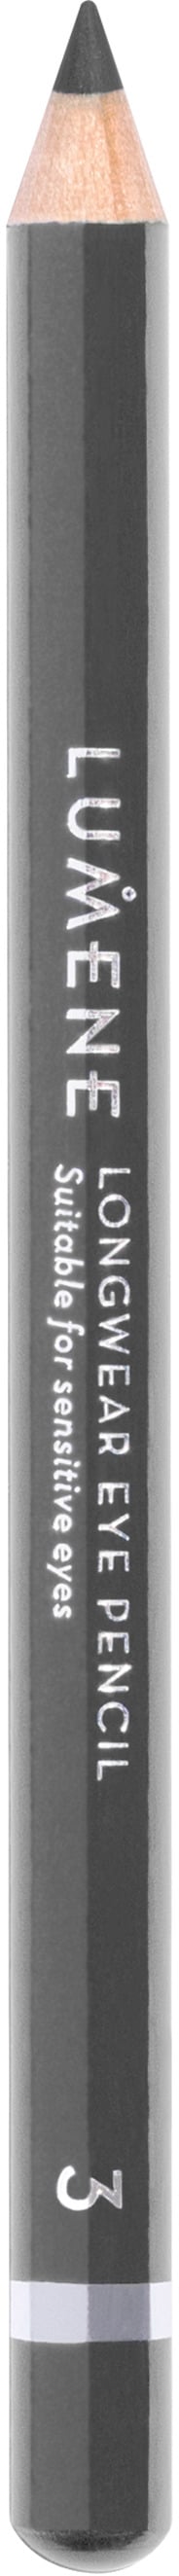 Lumene Longwear Eye Pencil 3 Soft Grey 1,14g